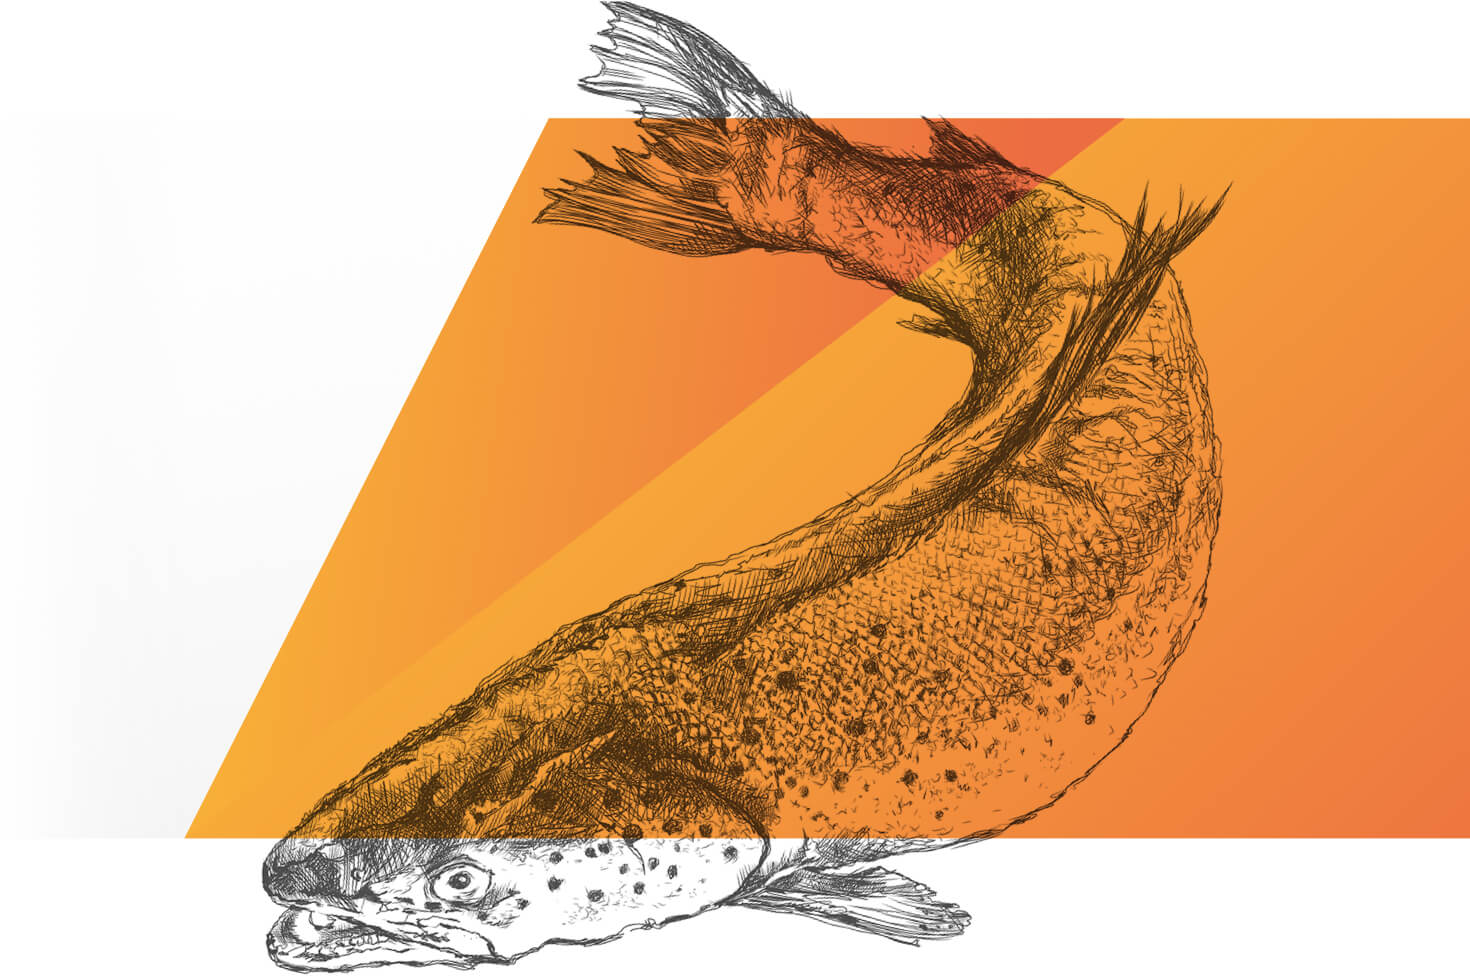 Ein schwarz-weiß gezeichneter Fisch, der im Vordergrund teilweise mit einer orangen, halbtransparenten Farbfläche bedeckt ist.